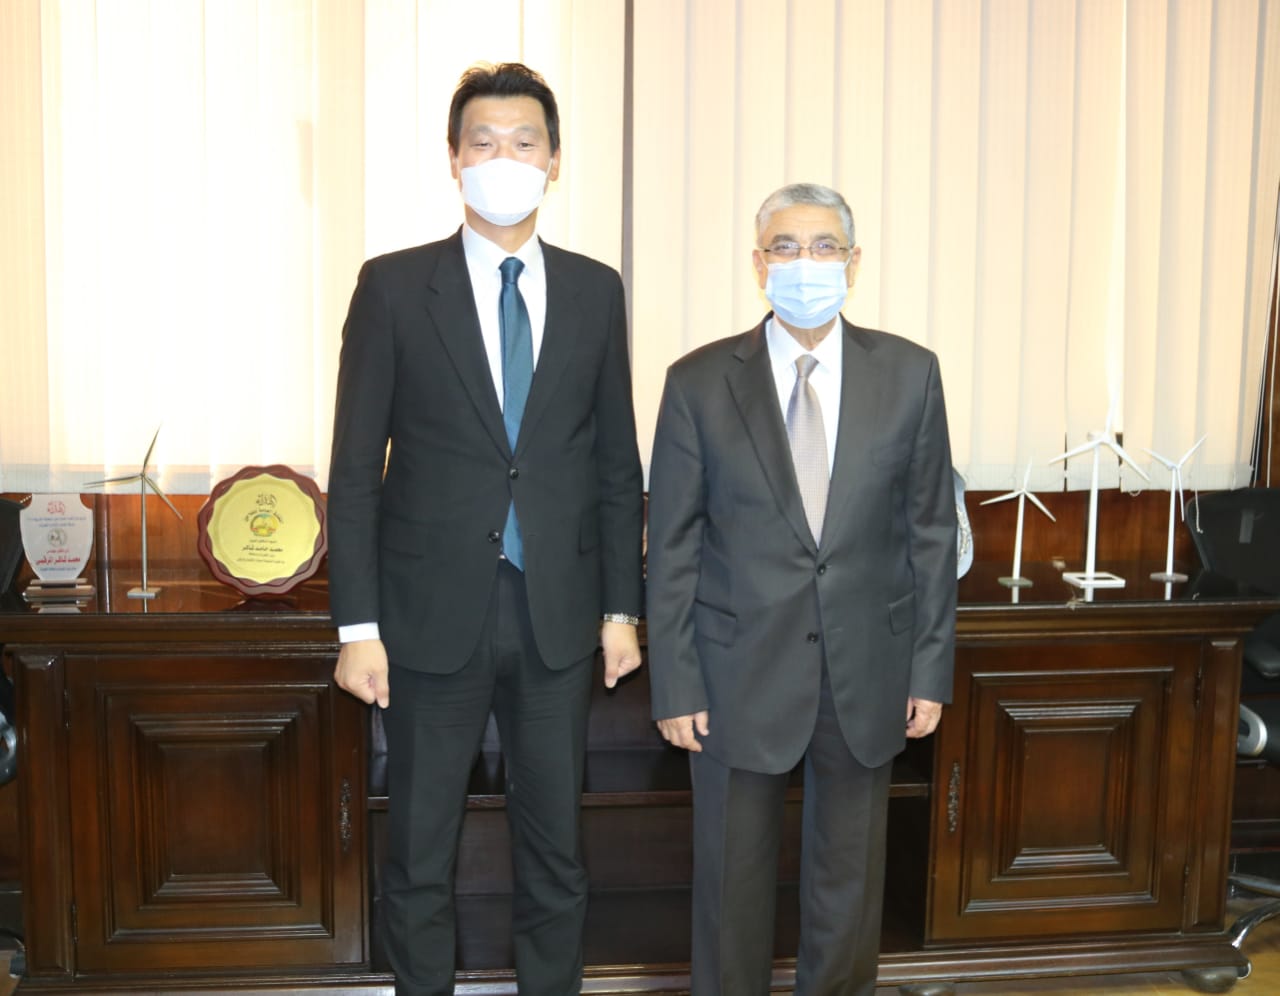 سفير كوريا مع وزير الكهرباء